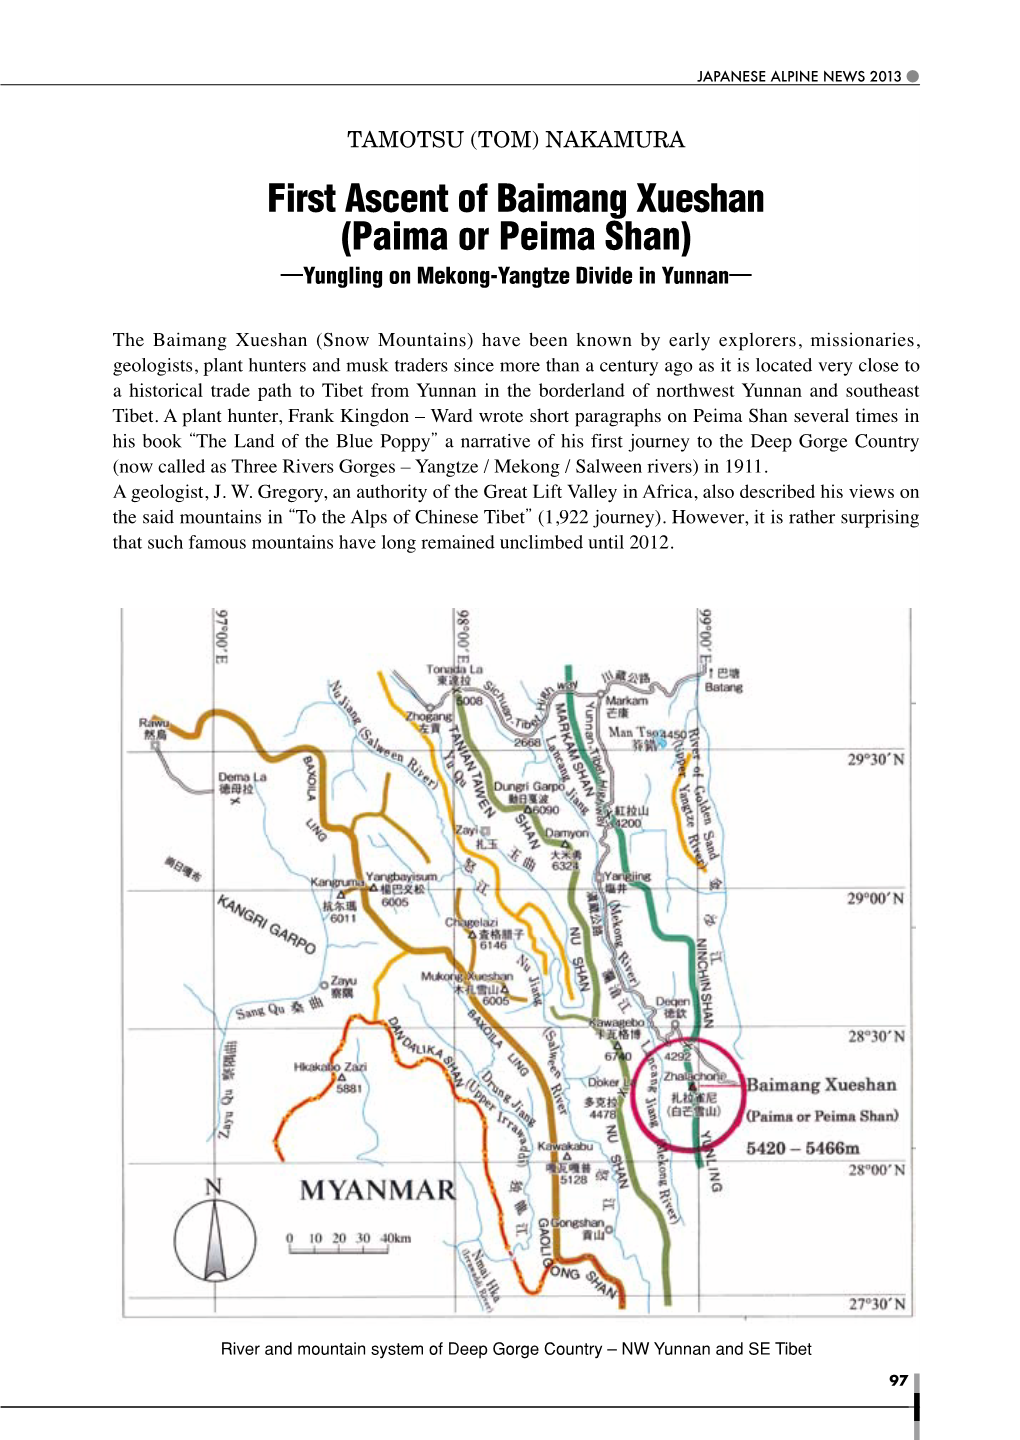 First Ascent of Baimang Xueshan (Paima Or Peima Shan) ―Yungling on Mekong-Yangtze Divide in Yunnan―